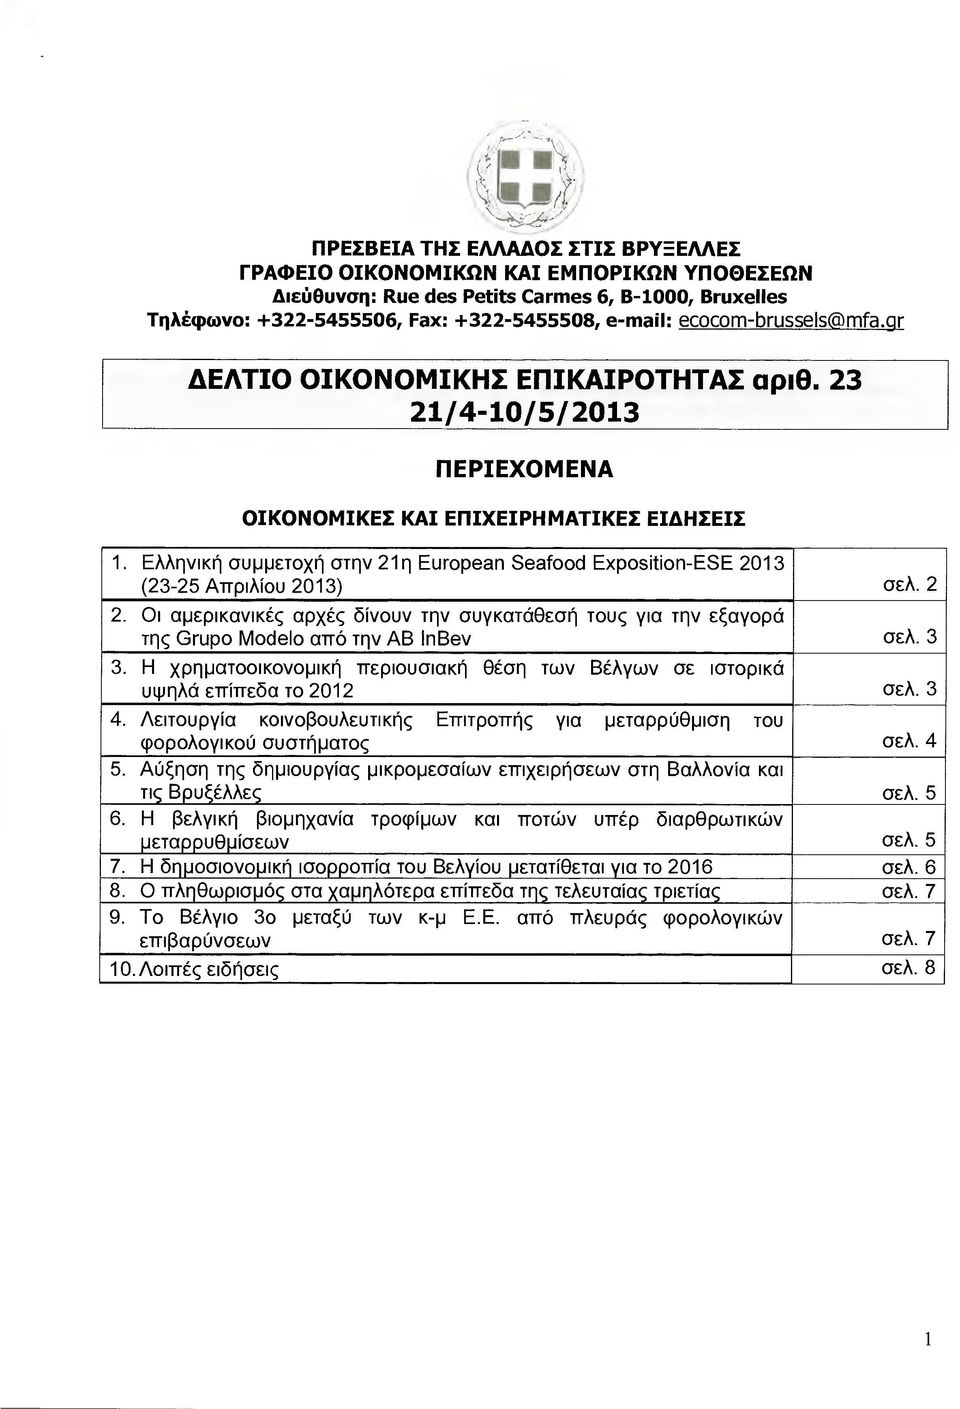 Ελληνική συµµετοχή στην 21 η European Seafood Exposition-ESE 2013 (23-25 Απριλίου 2013) σελ. 2 2.